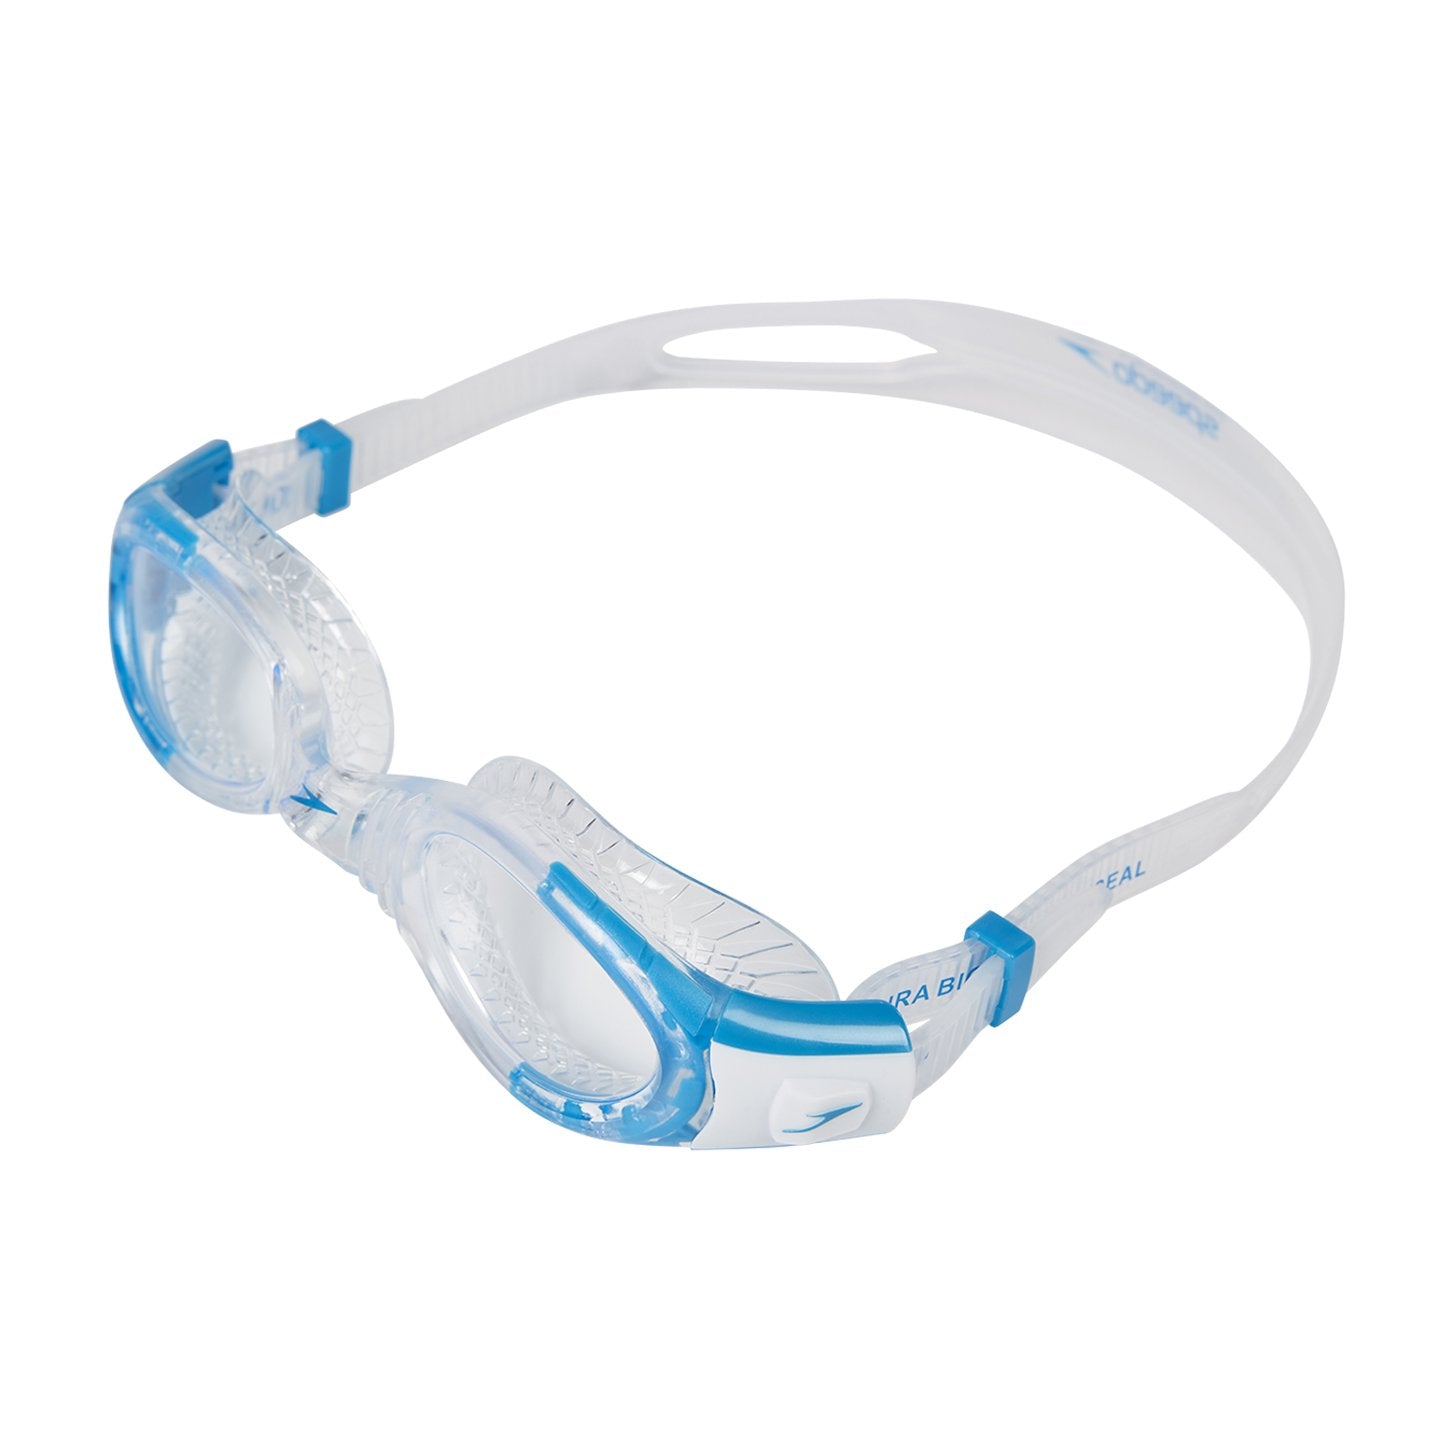 Speedo Futura Biofuse Flexiseal Junior Goggles Swimming